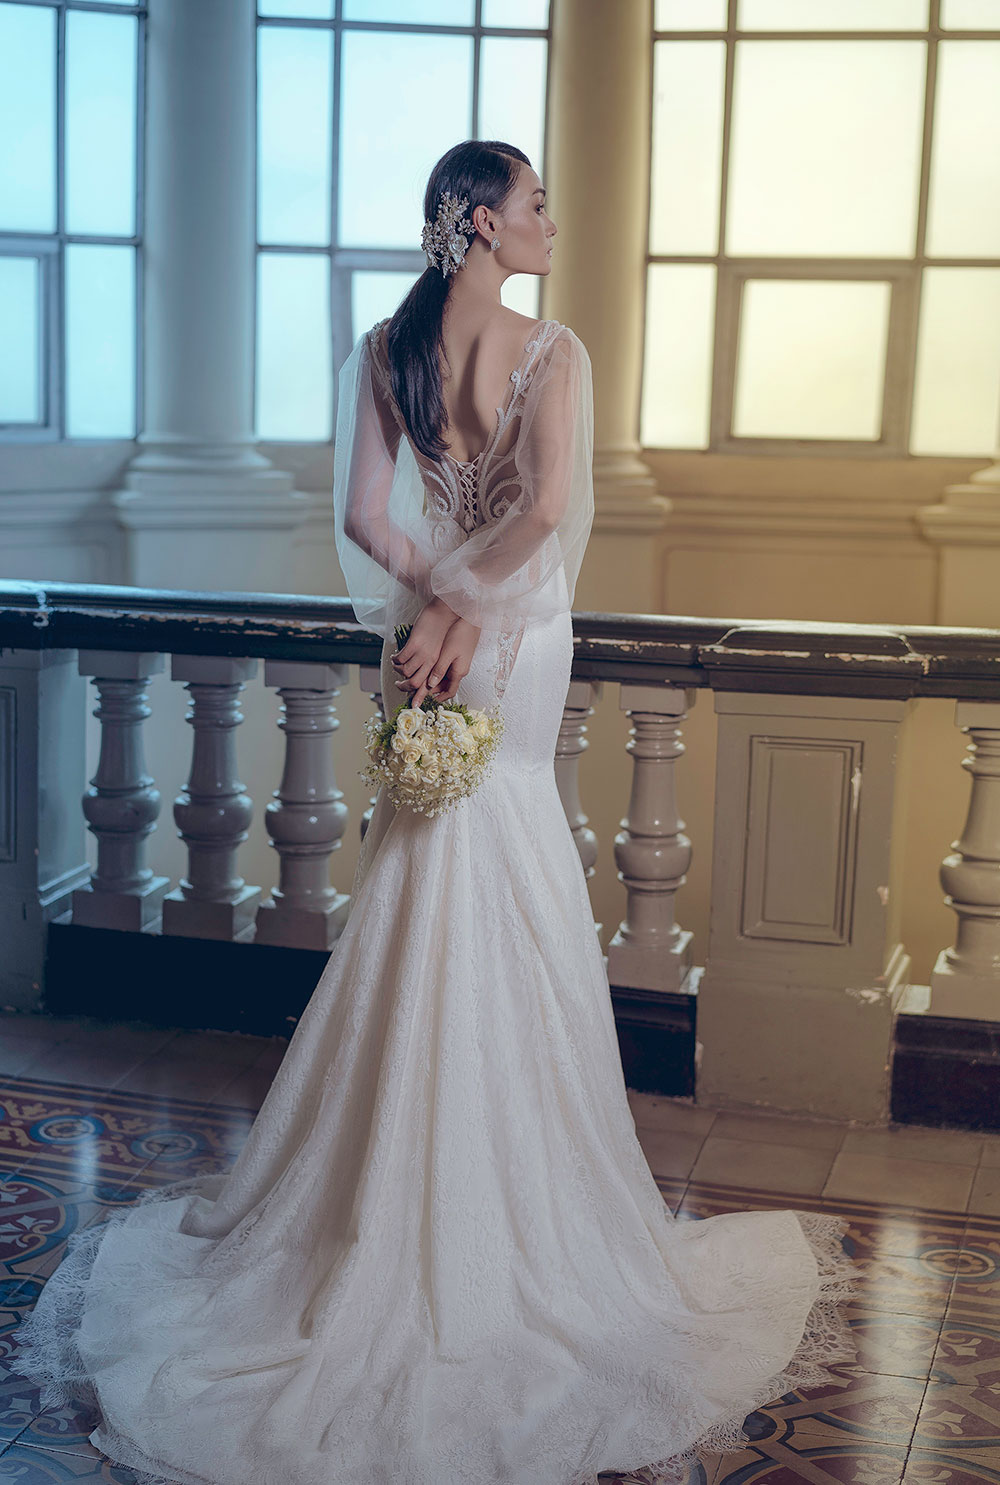 Người mẫu Thùy Trang đẹp lạnh lùng trong váy cô dâu8